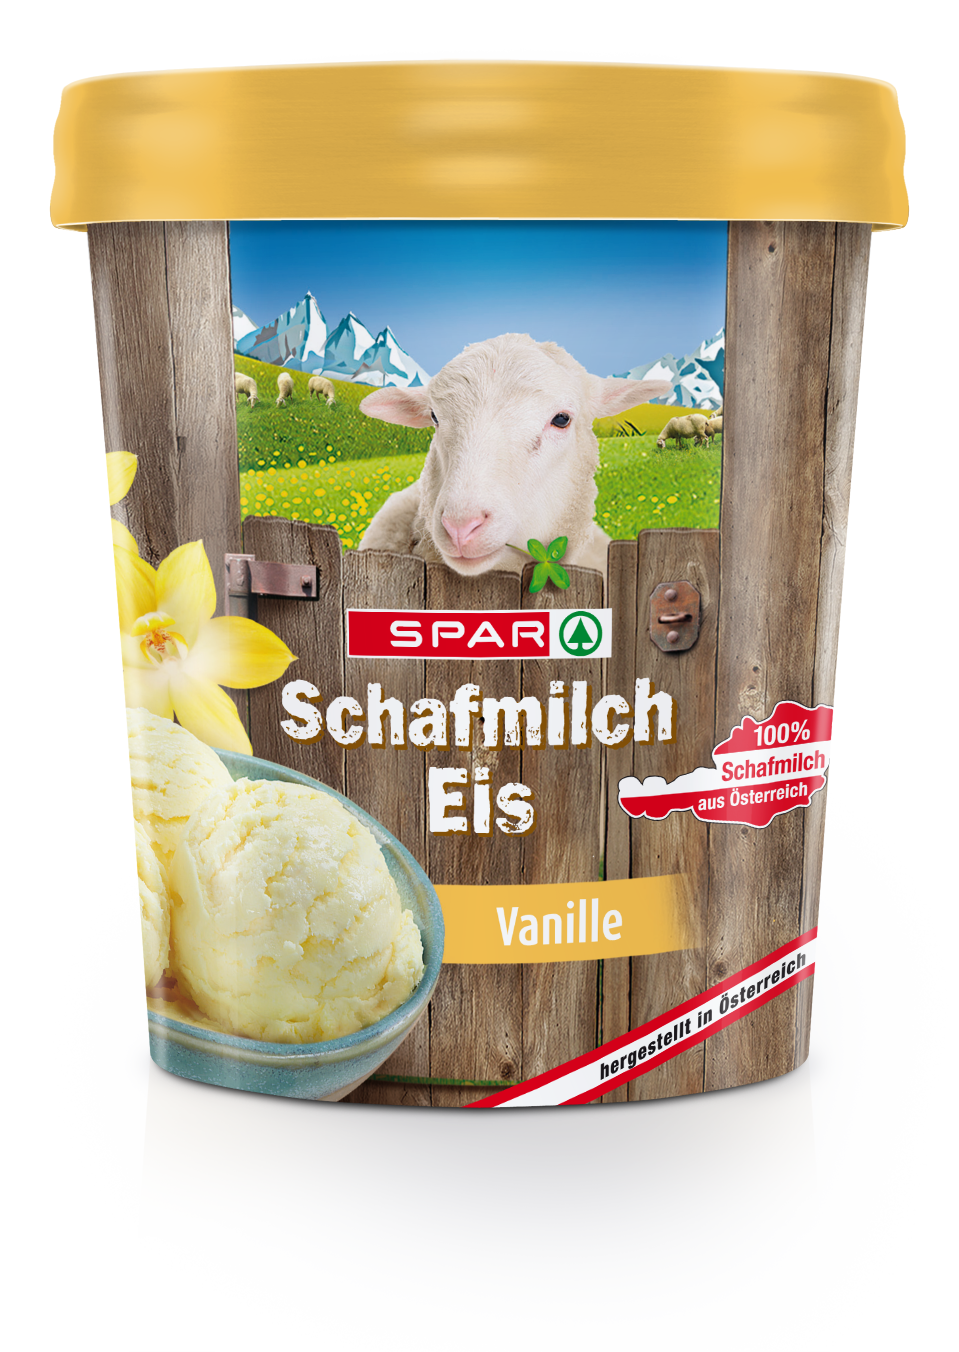 Schafmilch-Eis-3Ds-SPAR_Schafmilcheis_Vanille_2018